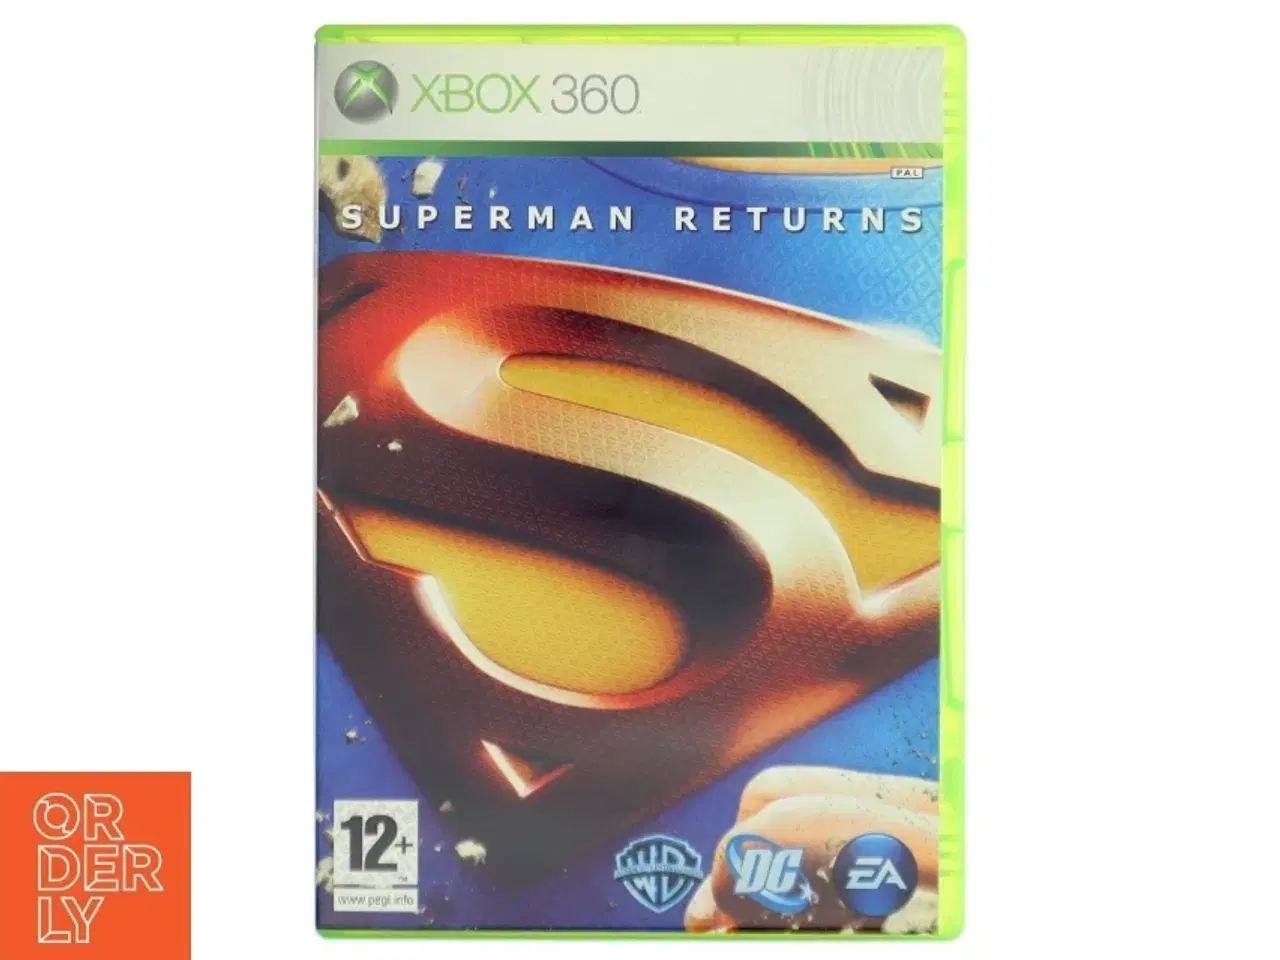 Billede 1 - Xbox 360 spil Superman Returns fra Electronic Arts